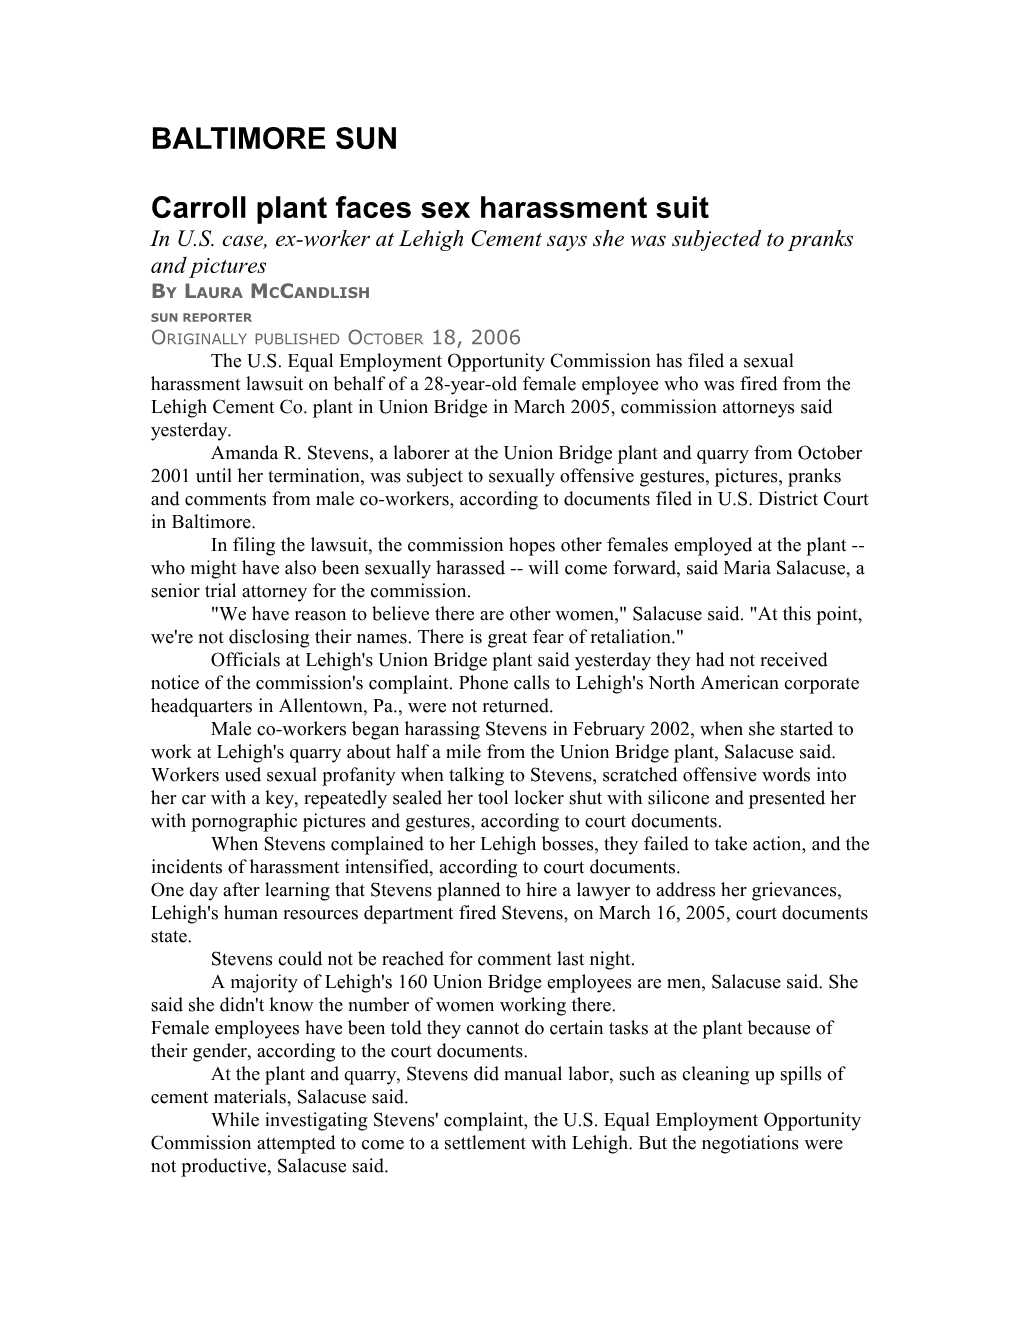 Carroll Plant Faces Sex Harassment Suit